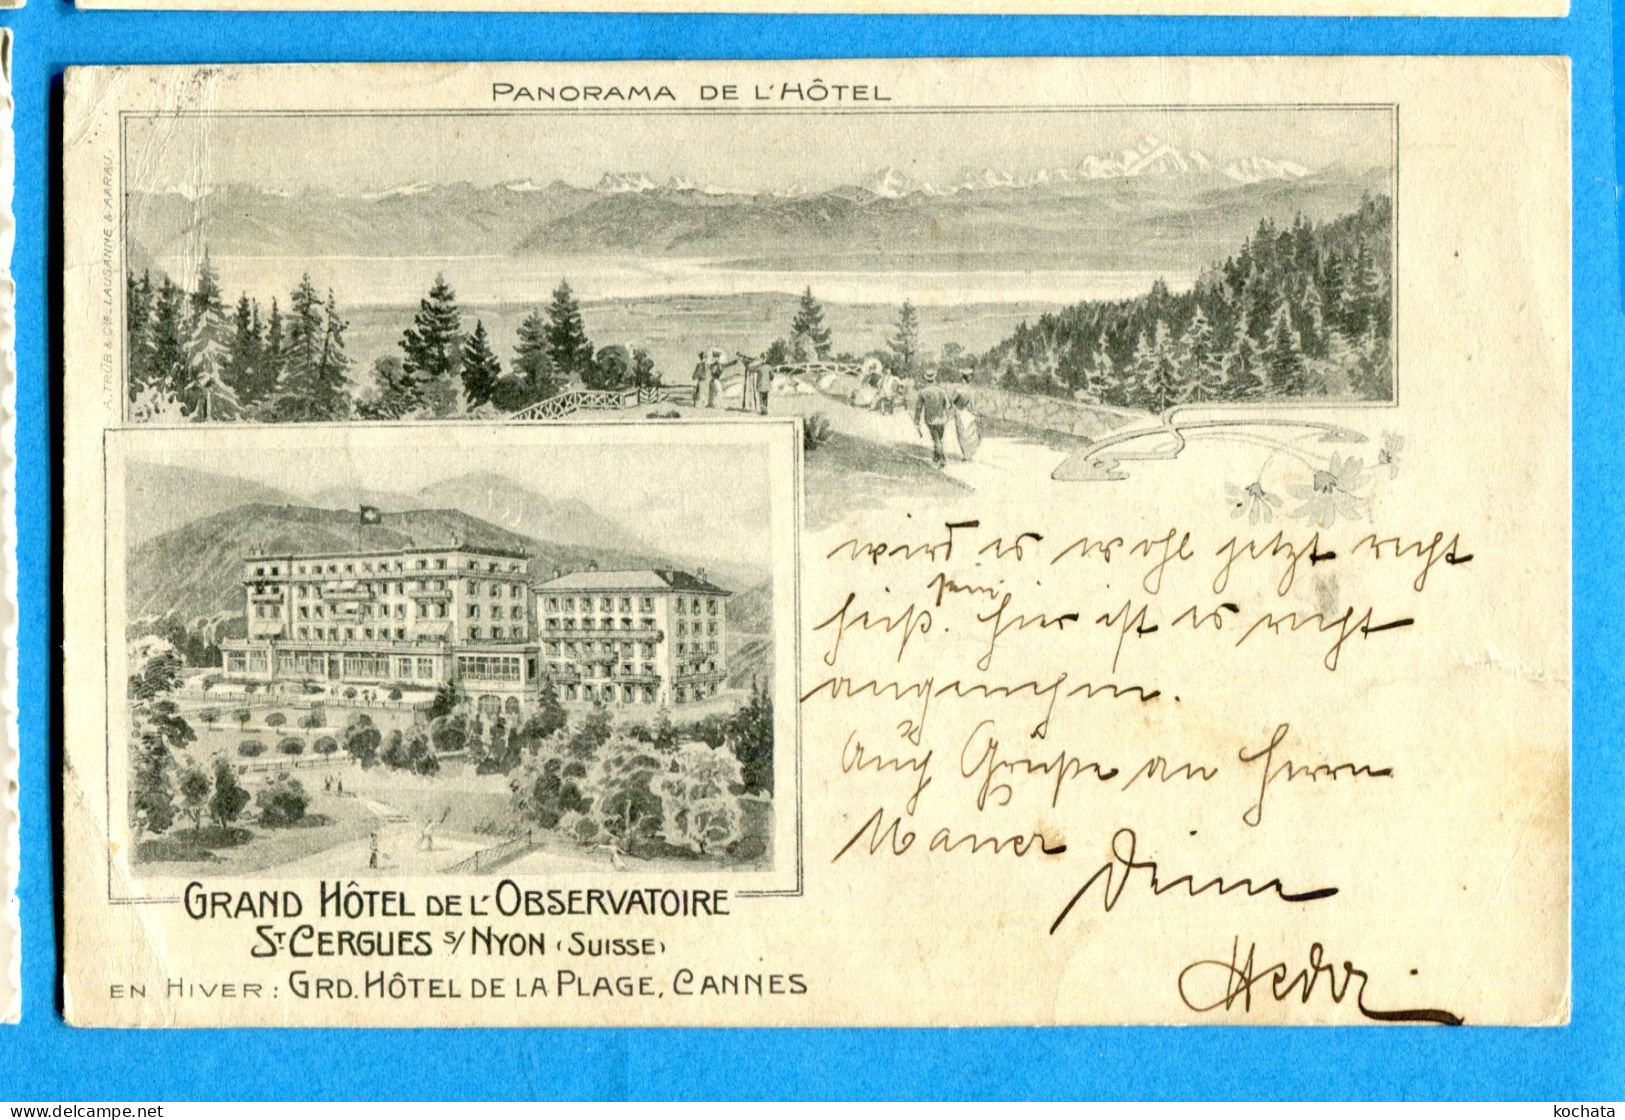 Y093, Grand Hôtel De L'Observatoire, St Cergue Sur Nyon Suisse, En Hiver Hôtel De La Plage Cannes, Circulée 1911 - Saint-Cergue